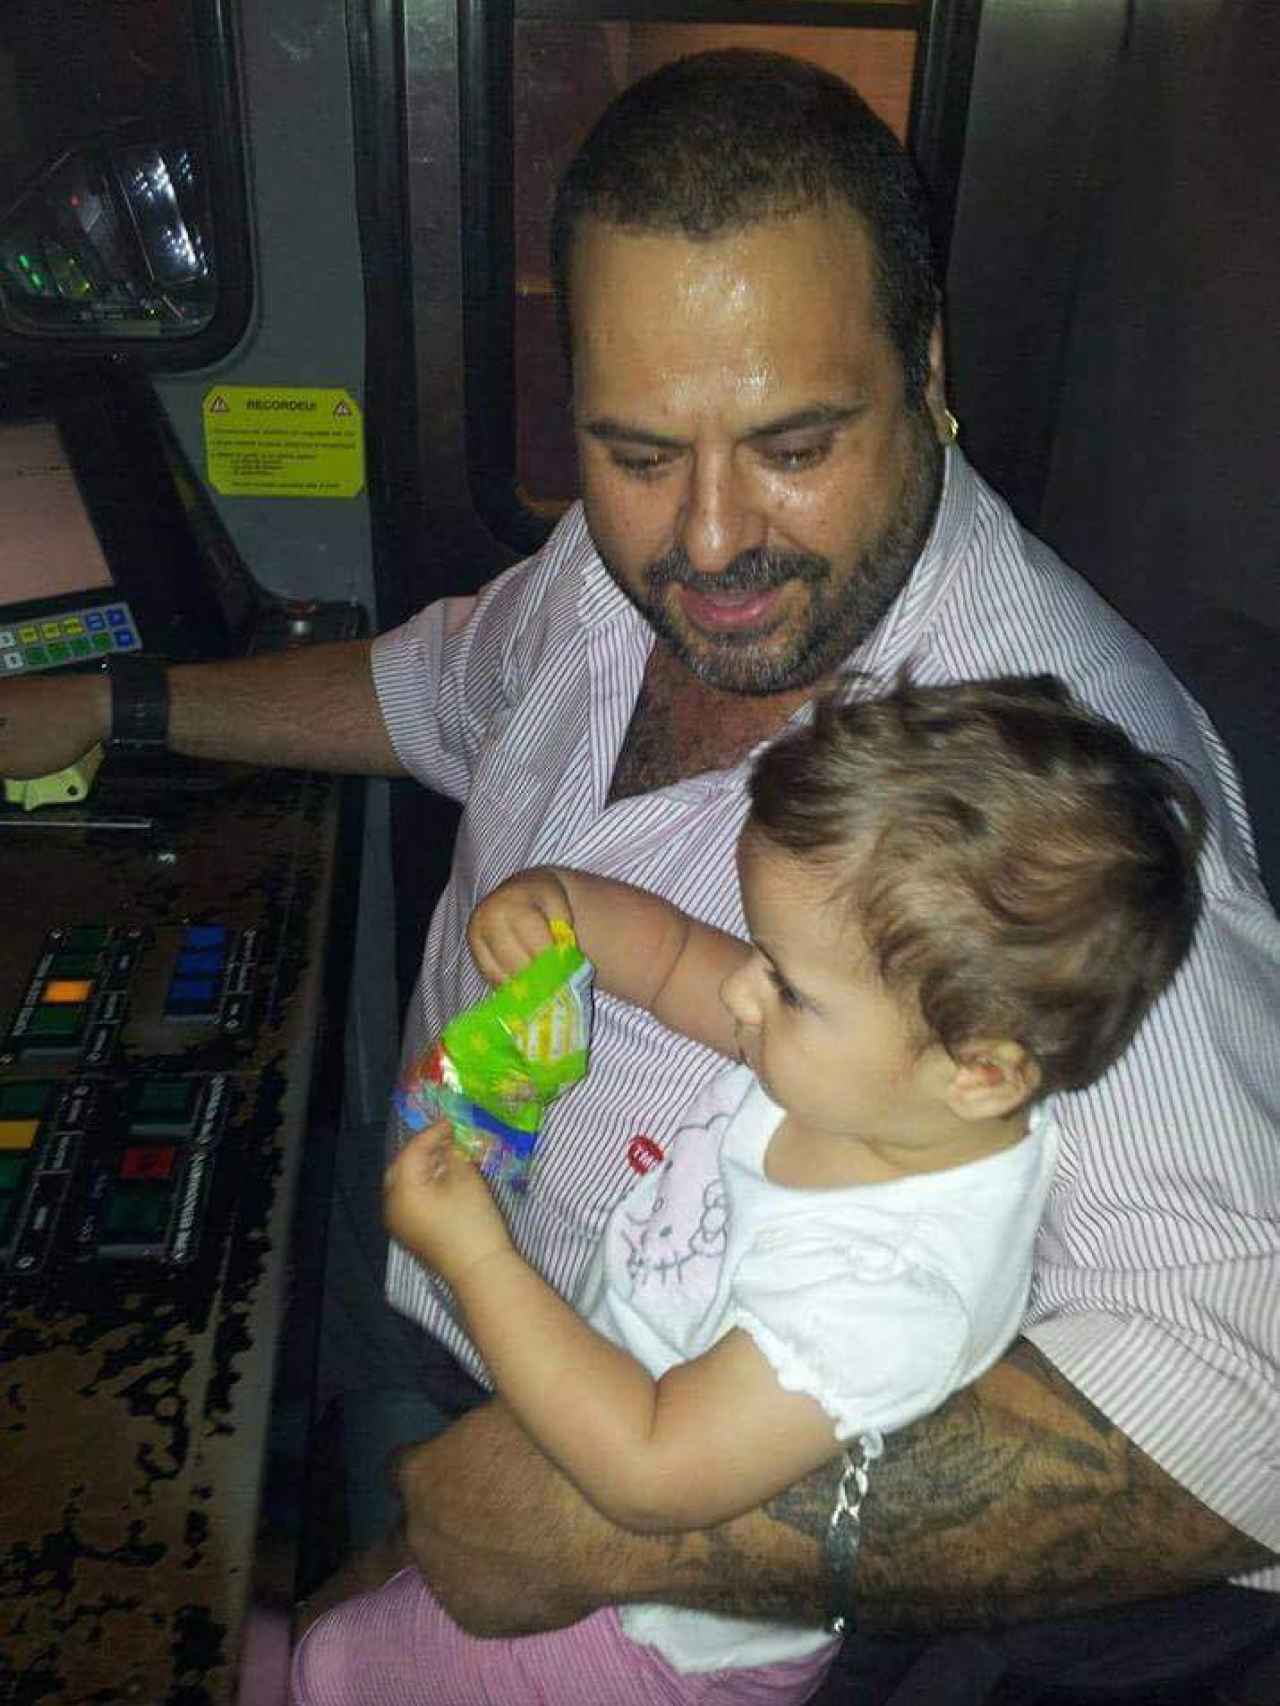 Javier, con su hija en brazos en el metro: No estaba conduciendo, subraya